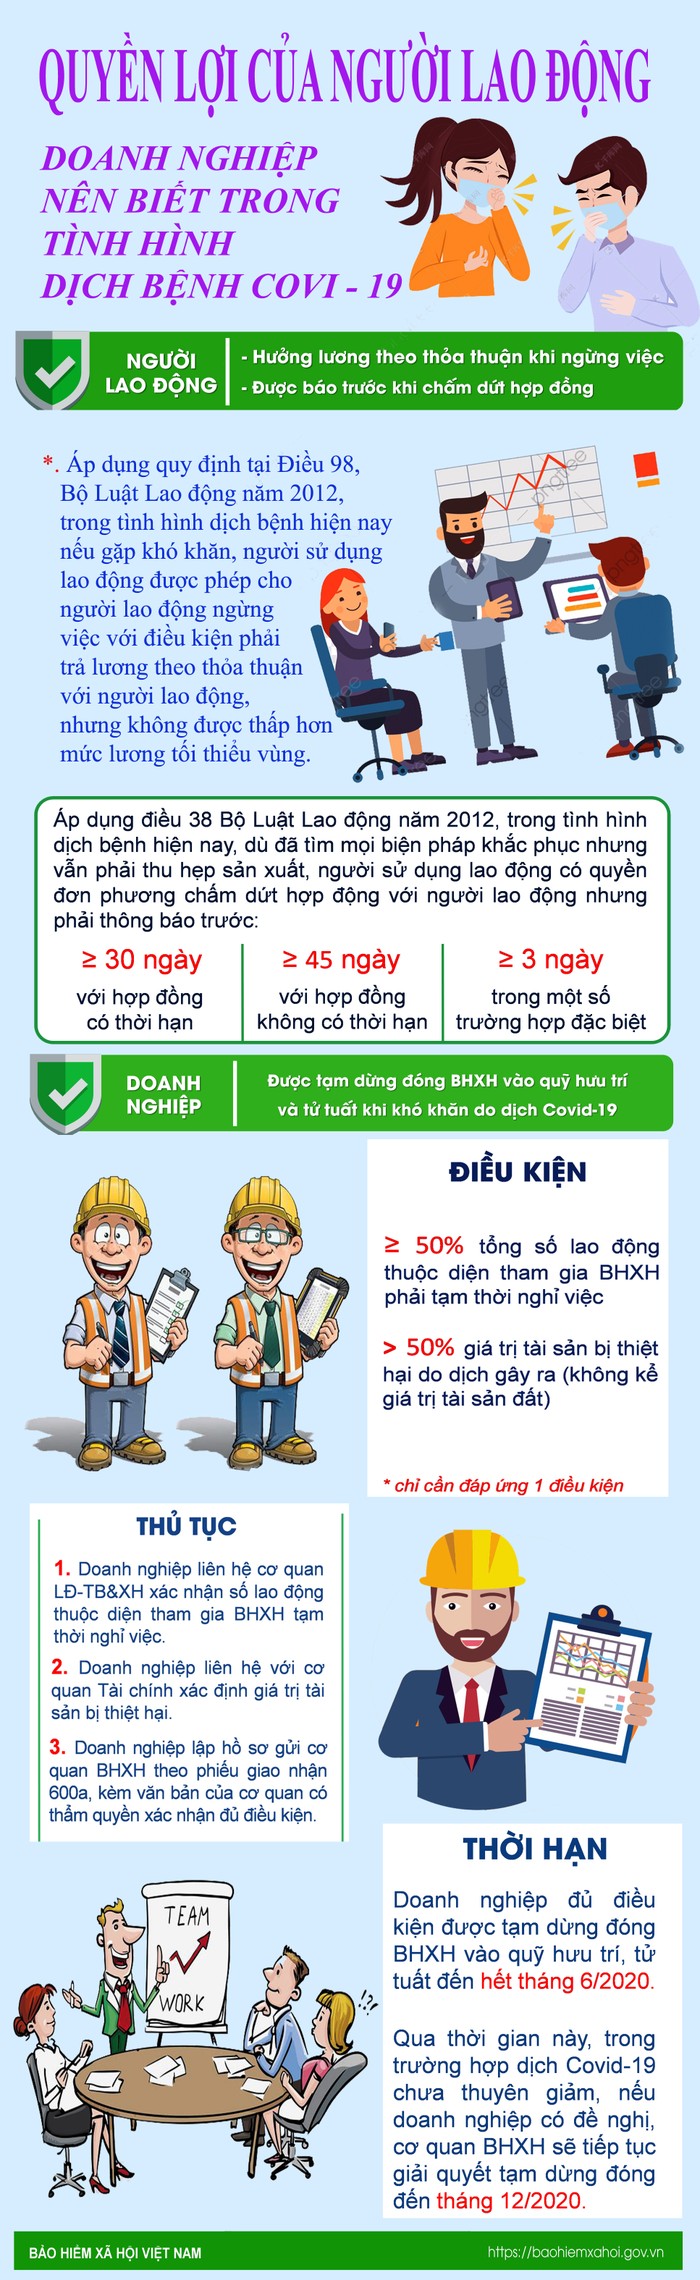 Quyền lợi của người lao động, doanh nghiệp trong dịch Covid -19. Infographic: Tùng Dương.